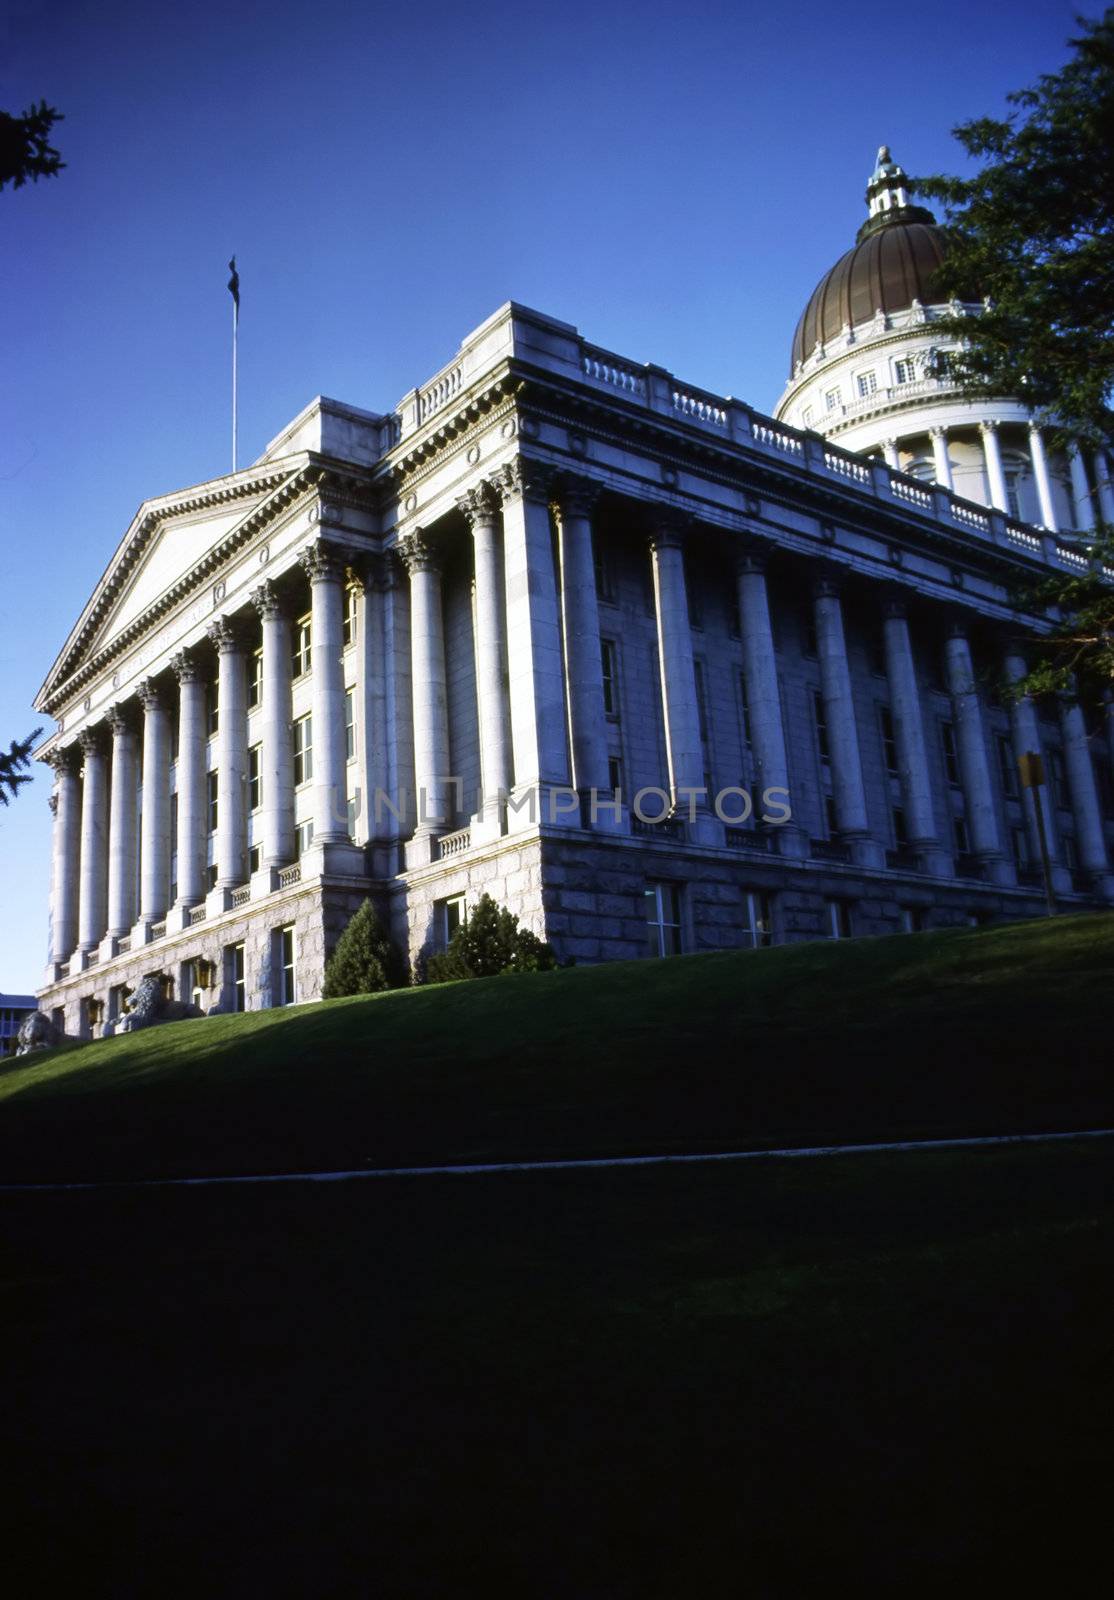 State Capitol, Utah by jol66